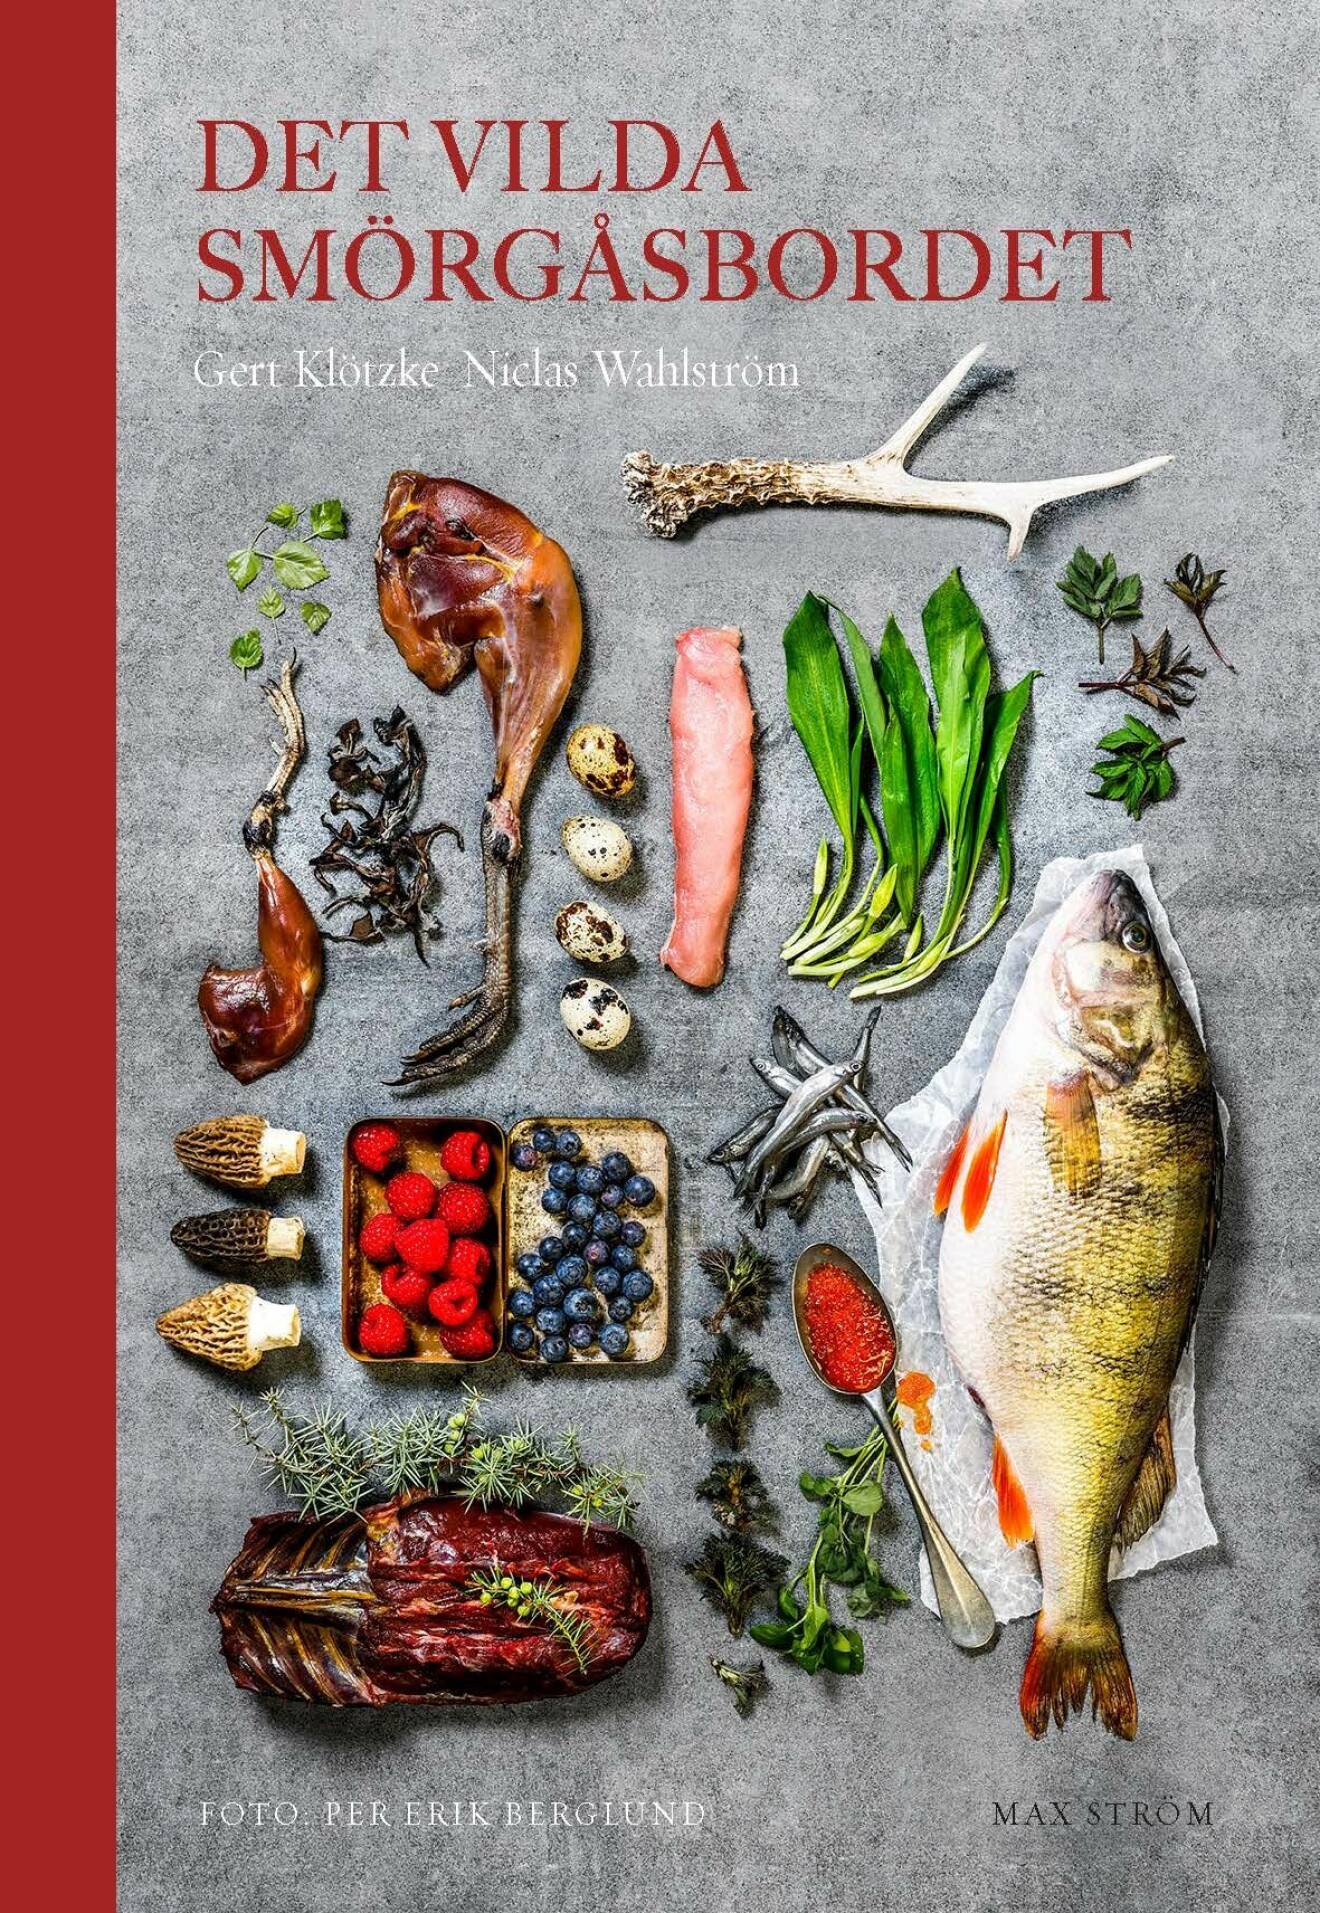 Inspirerande kokbok av Gert Klötzke och Niclas Wahlström – Det vilda smörgåsbordet